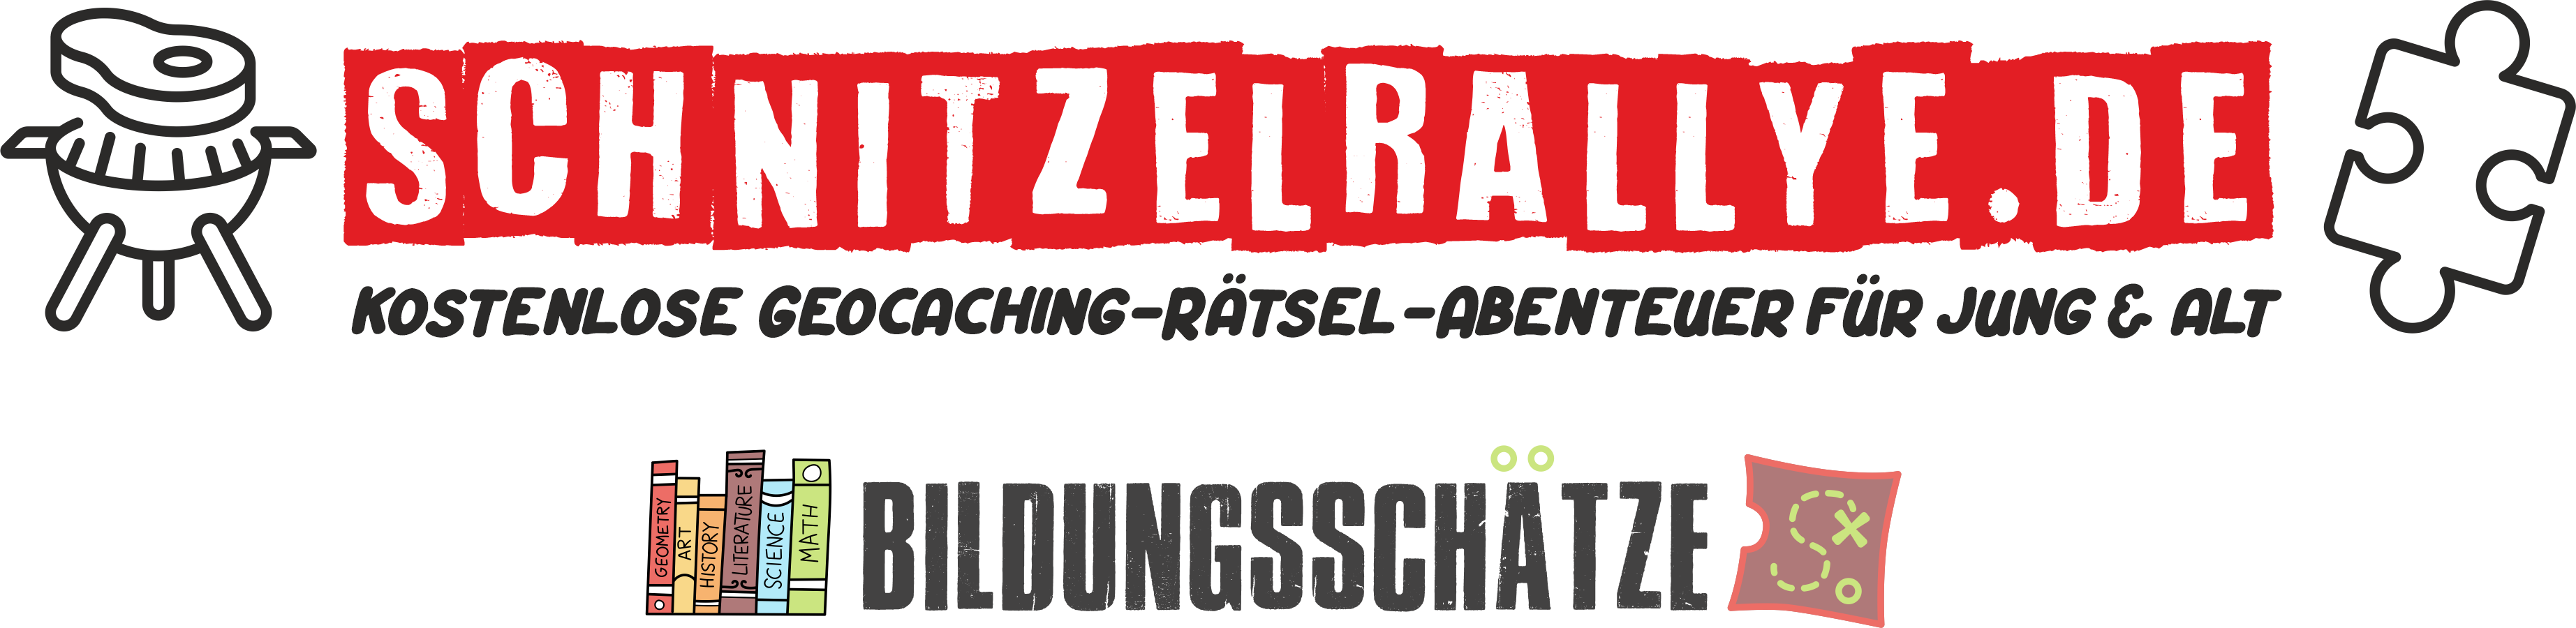 schnitzel-rallye